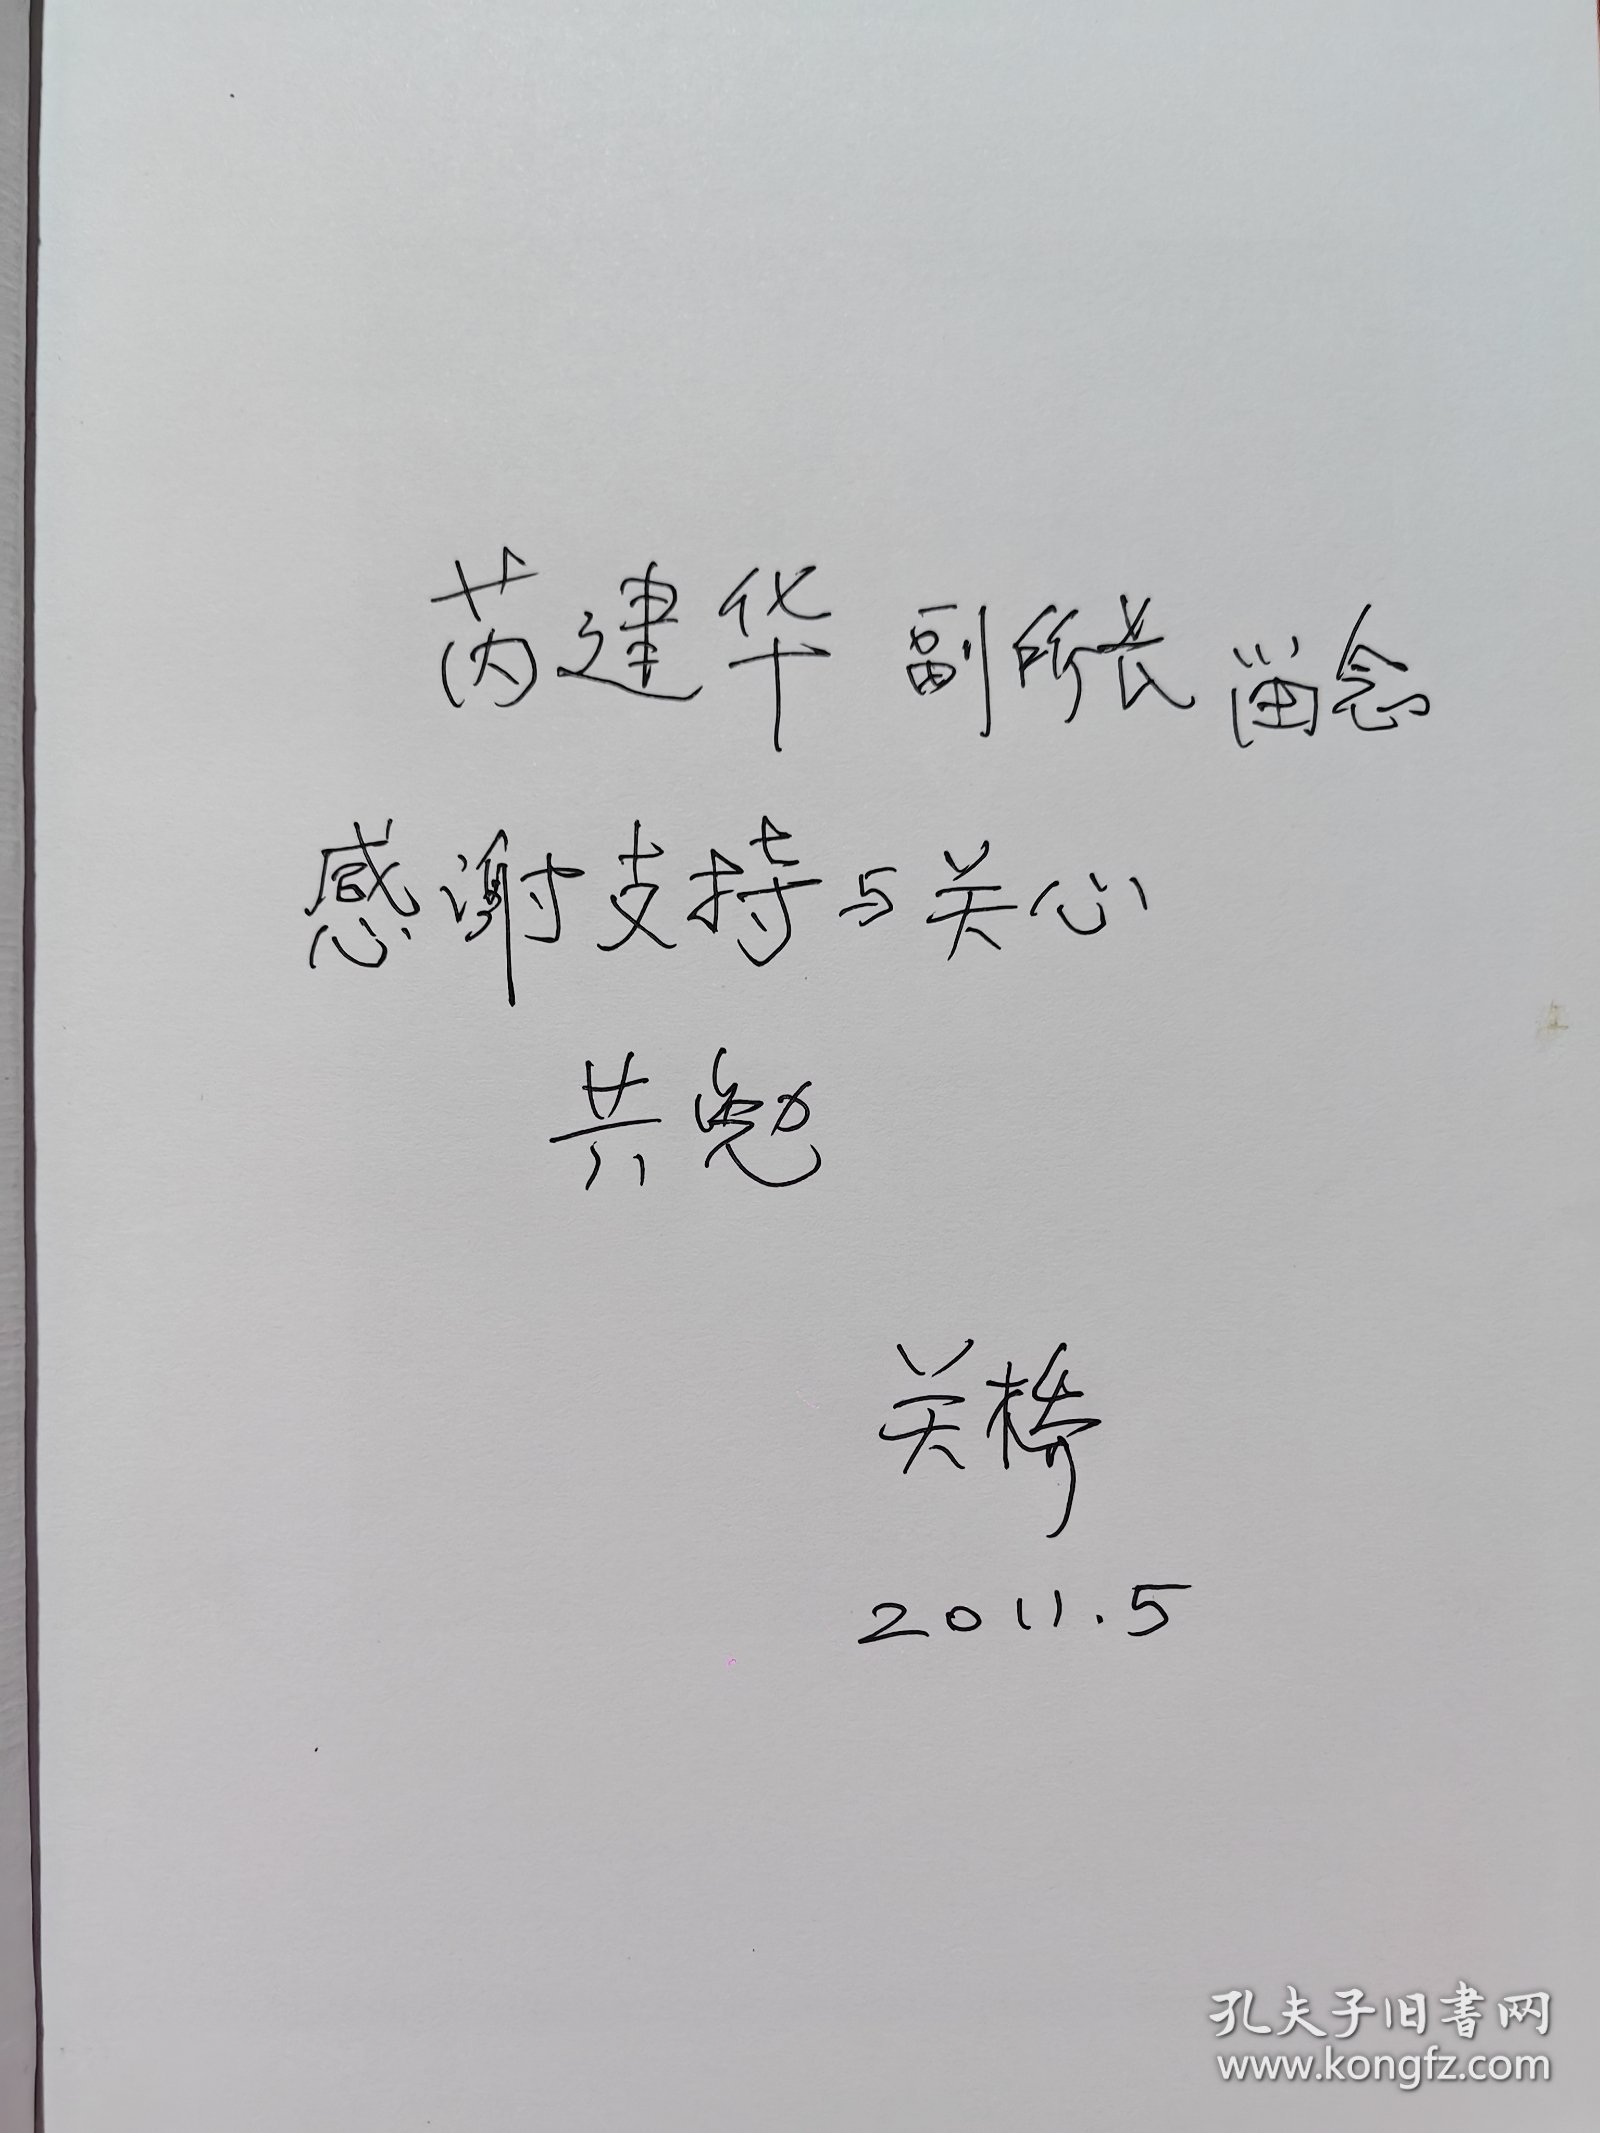 中国工程院院士关桥（1935-2022）题词签名本《生命之光》